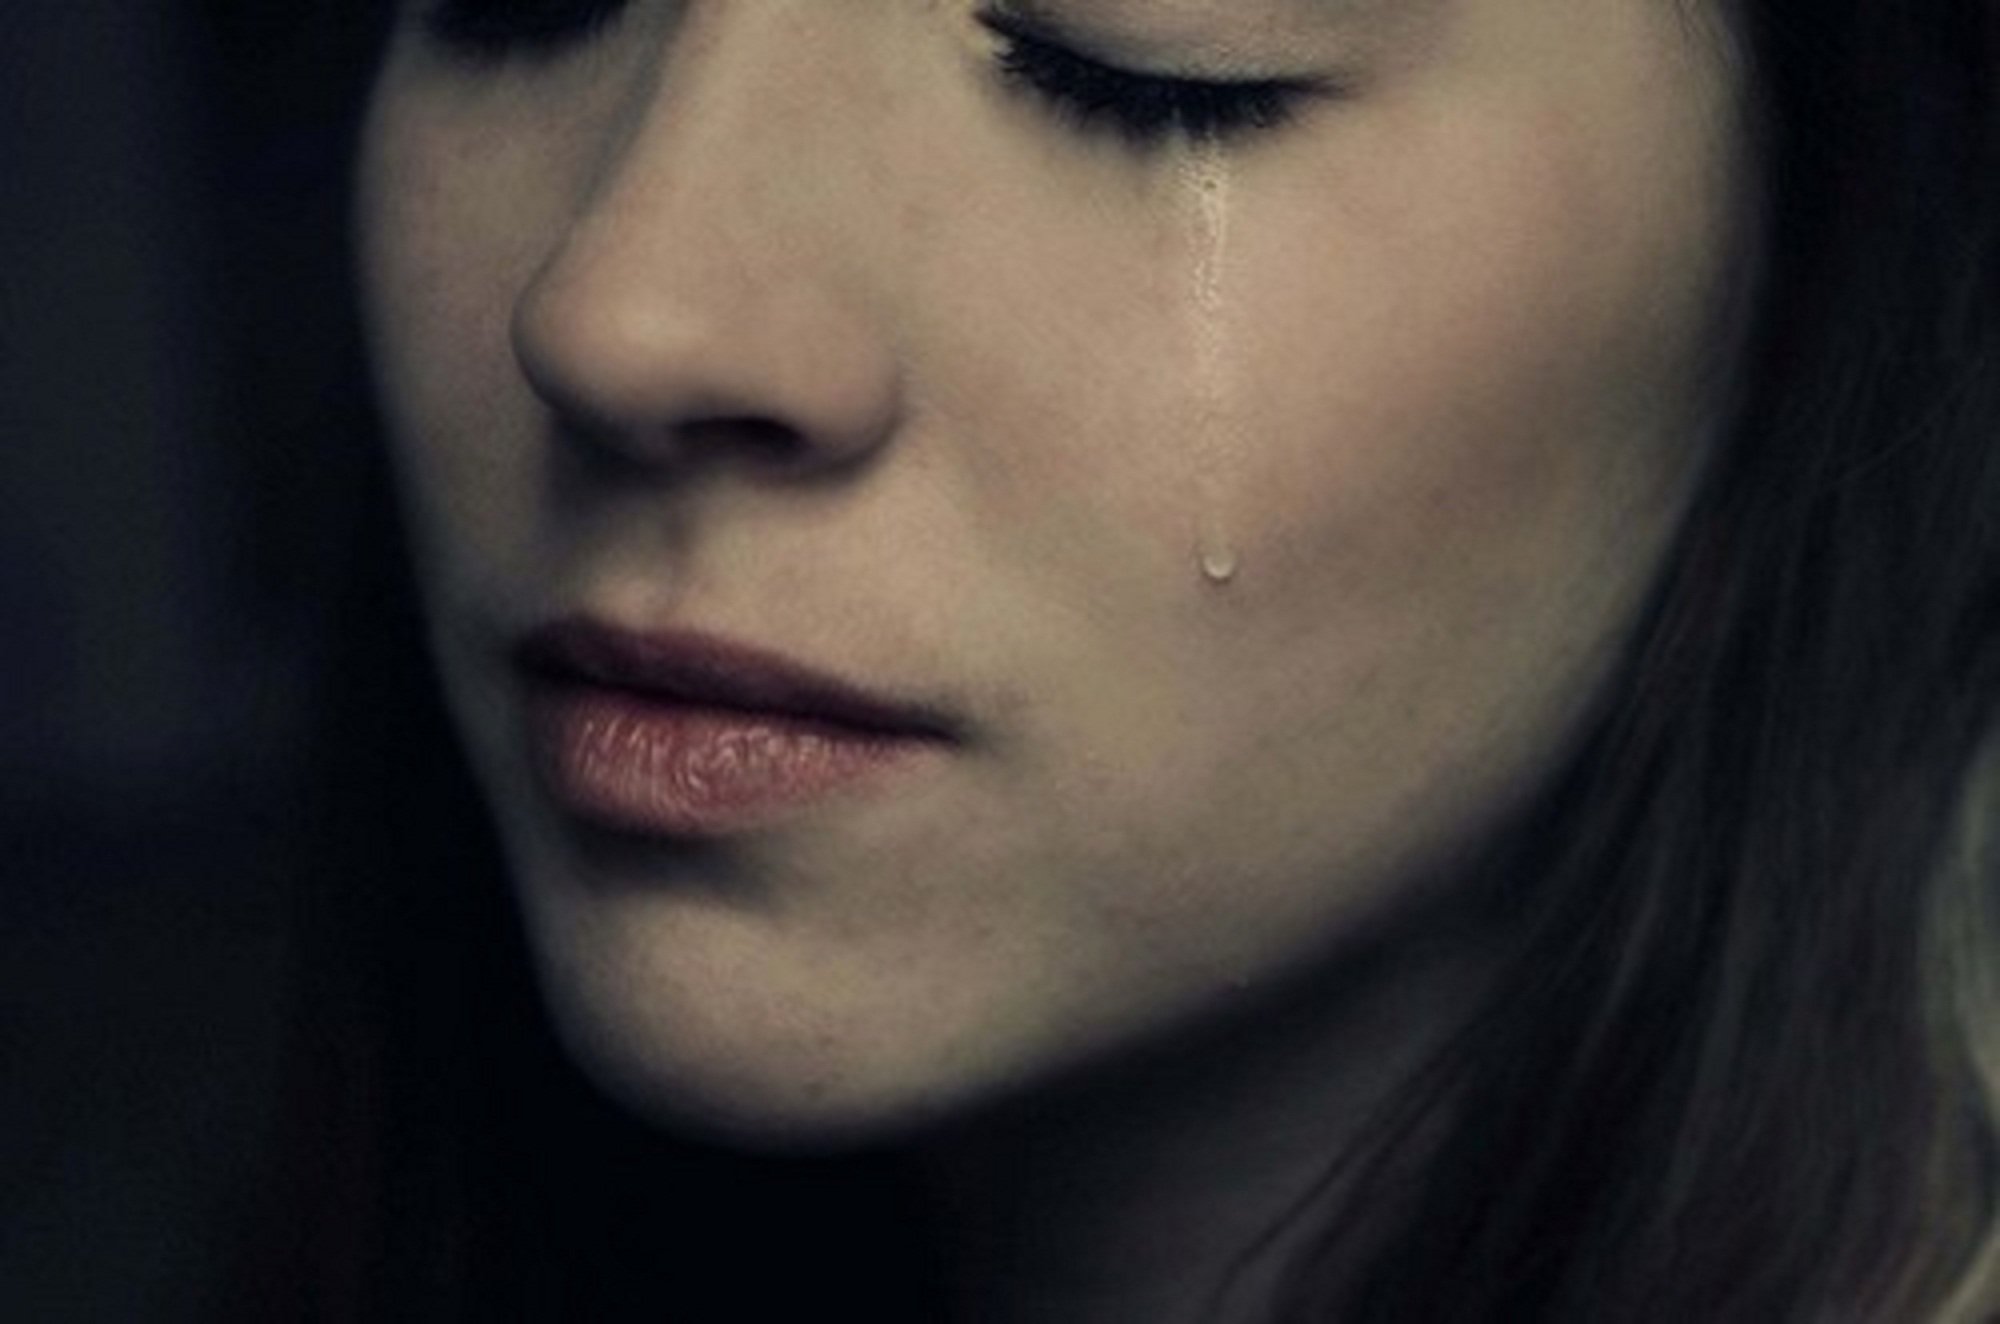 Девушка Плачет Фото Вк